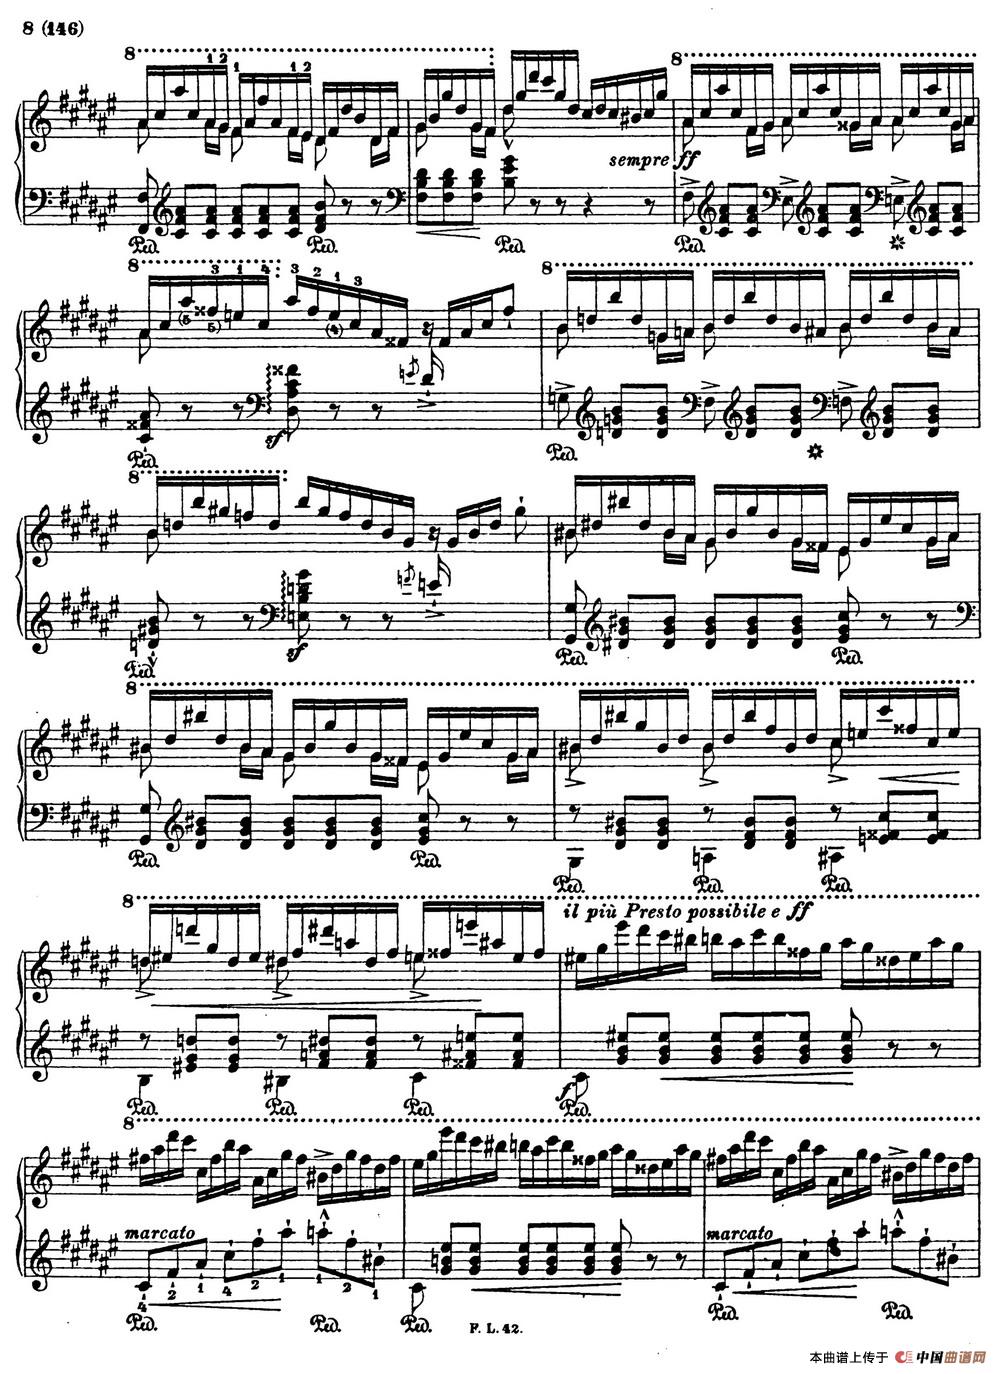 李斯特音乐会练习曲 S145（1 S145 森林的呼啸 Waldesrauschen）(1)_Etudes de Concert s145 Liszt_页面_07.jpg